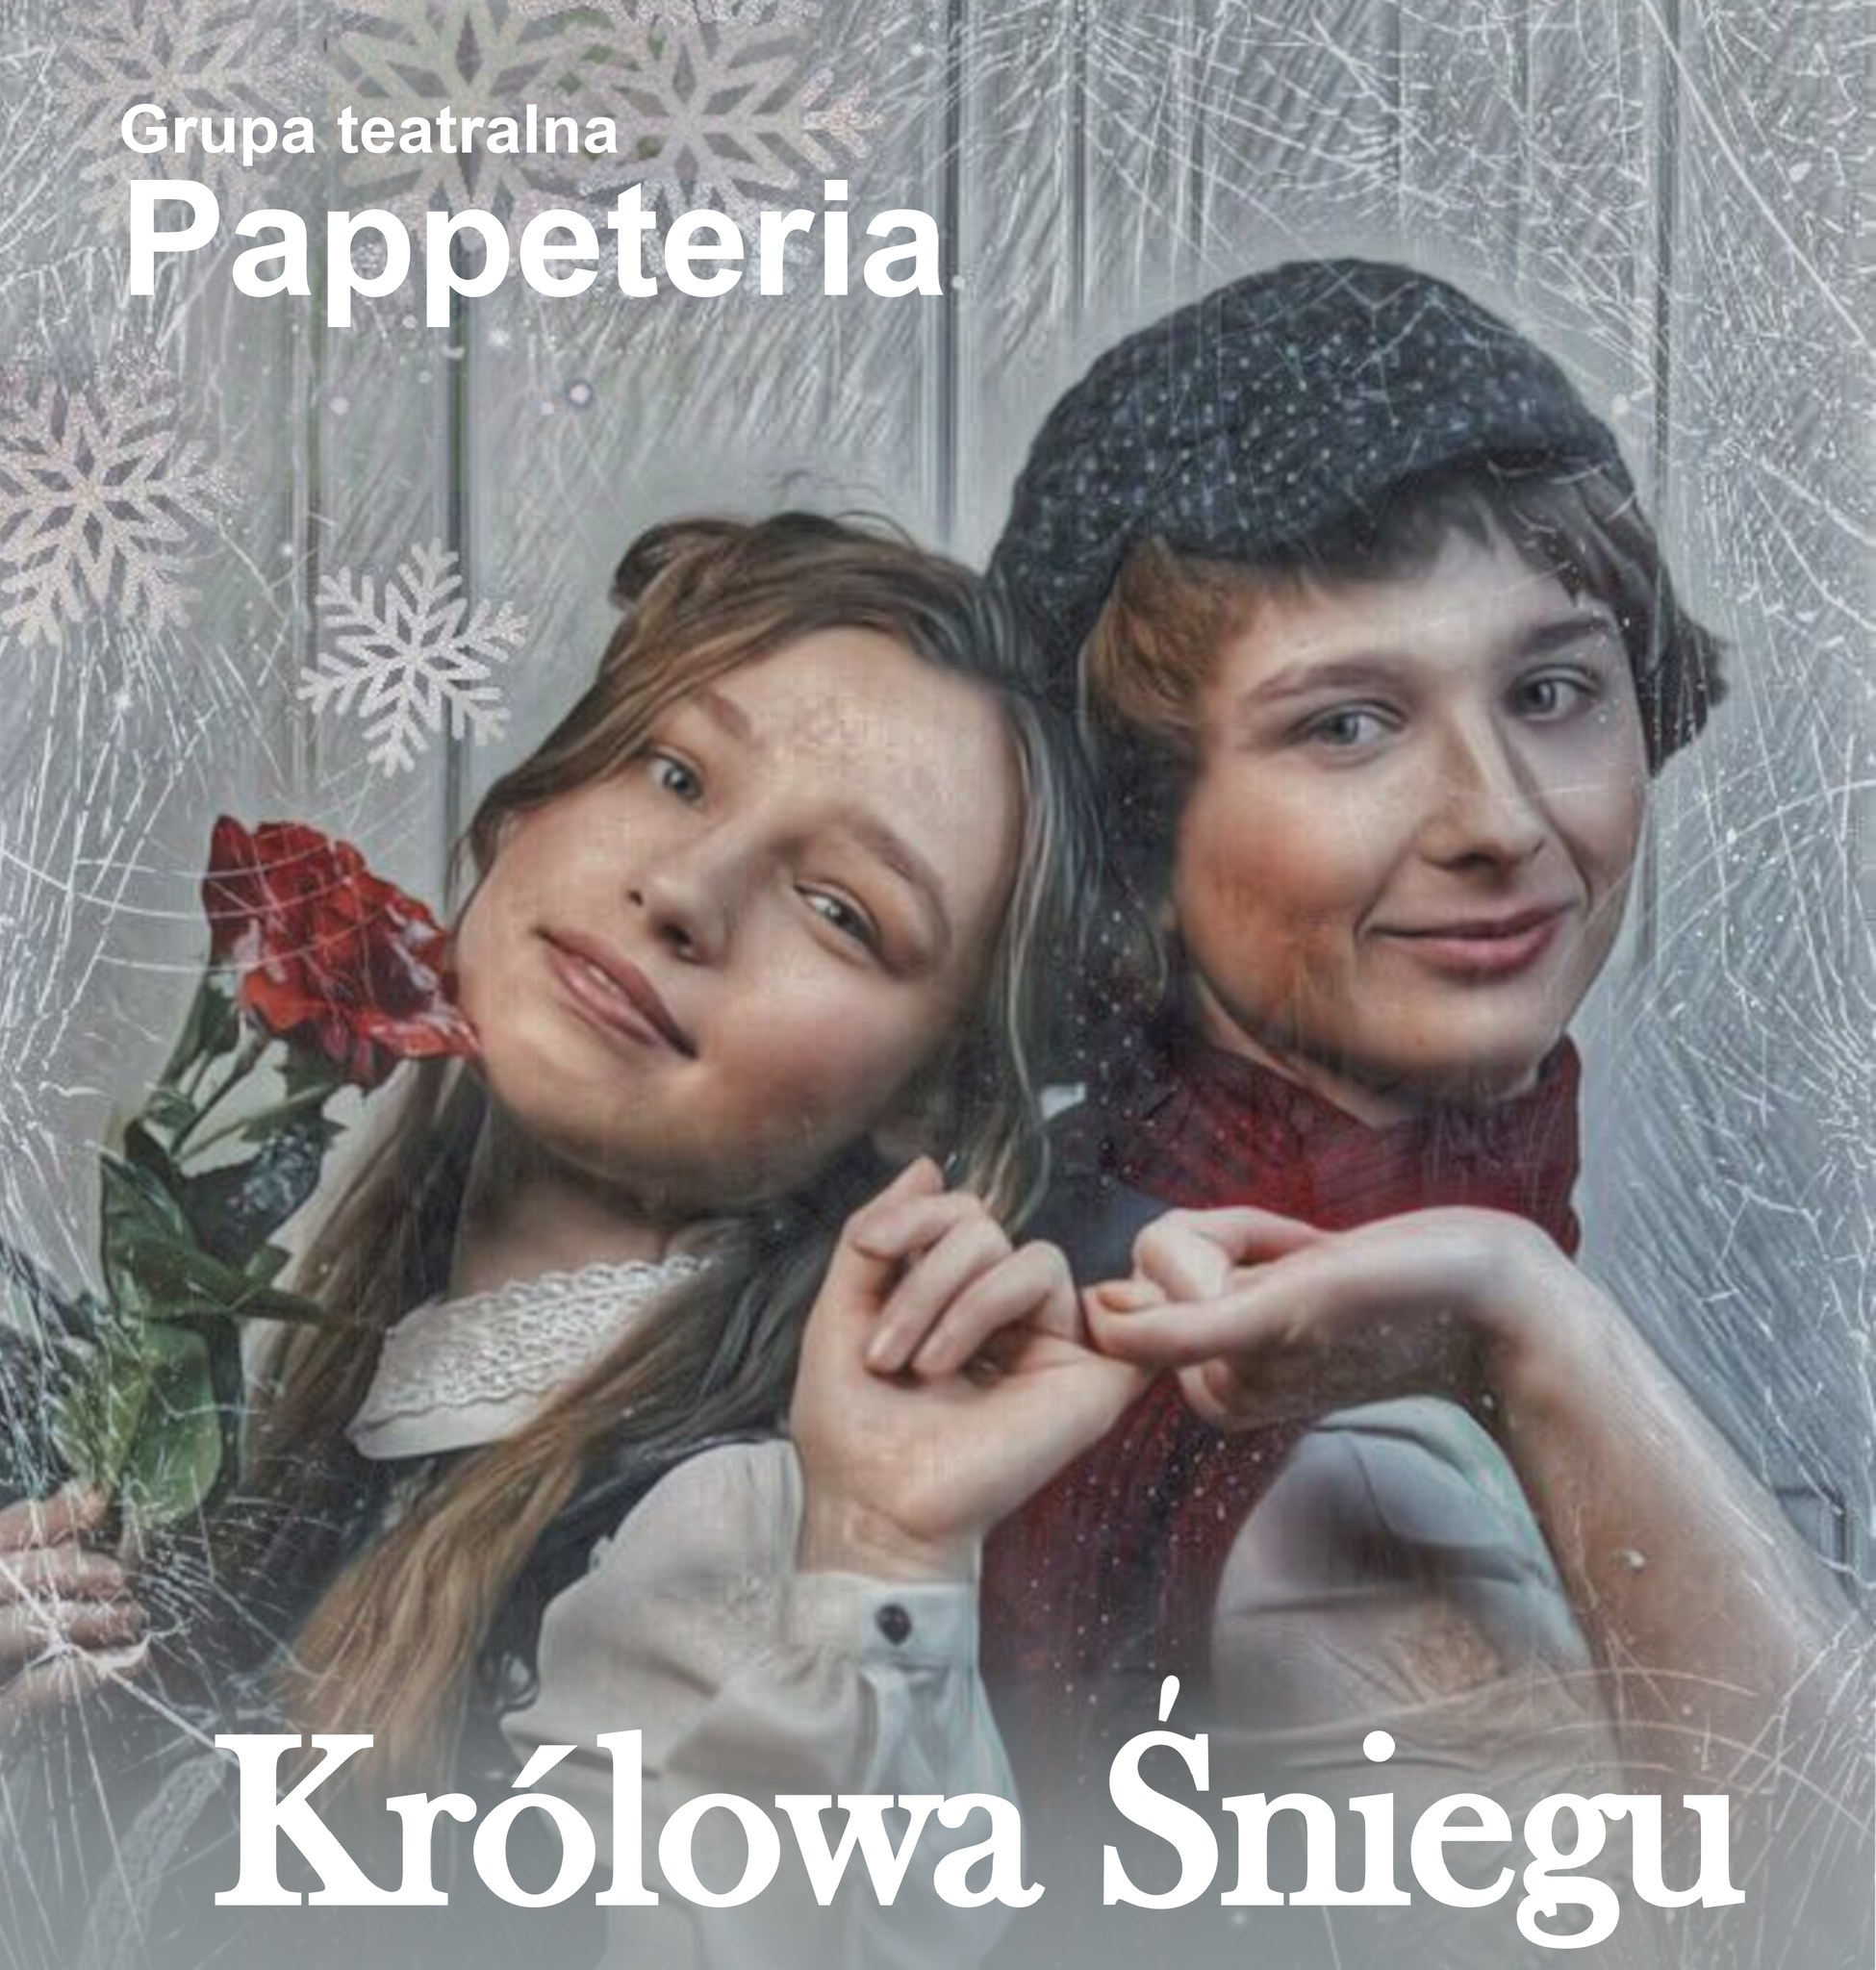  Pappeteria: Królowa śniegu Na zdjęciu plakat przedstawienia